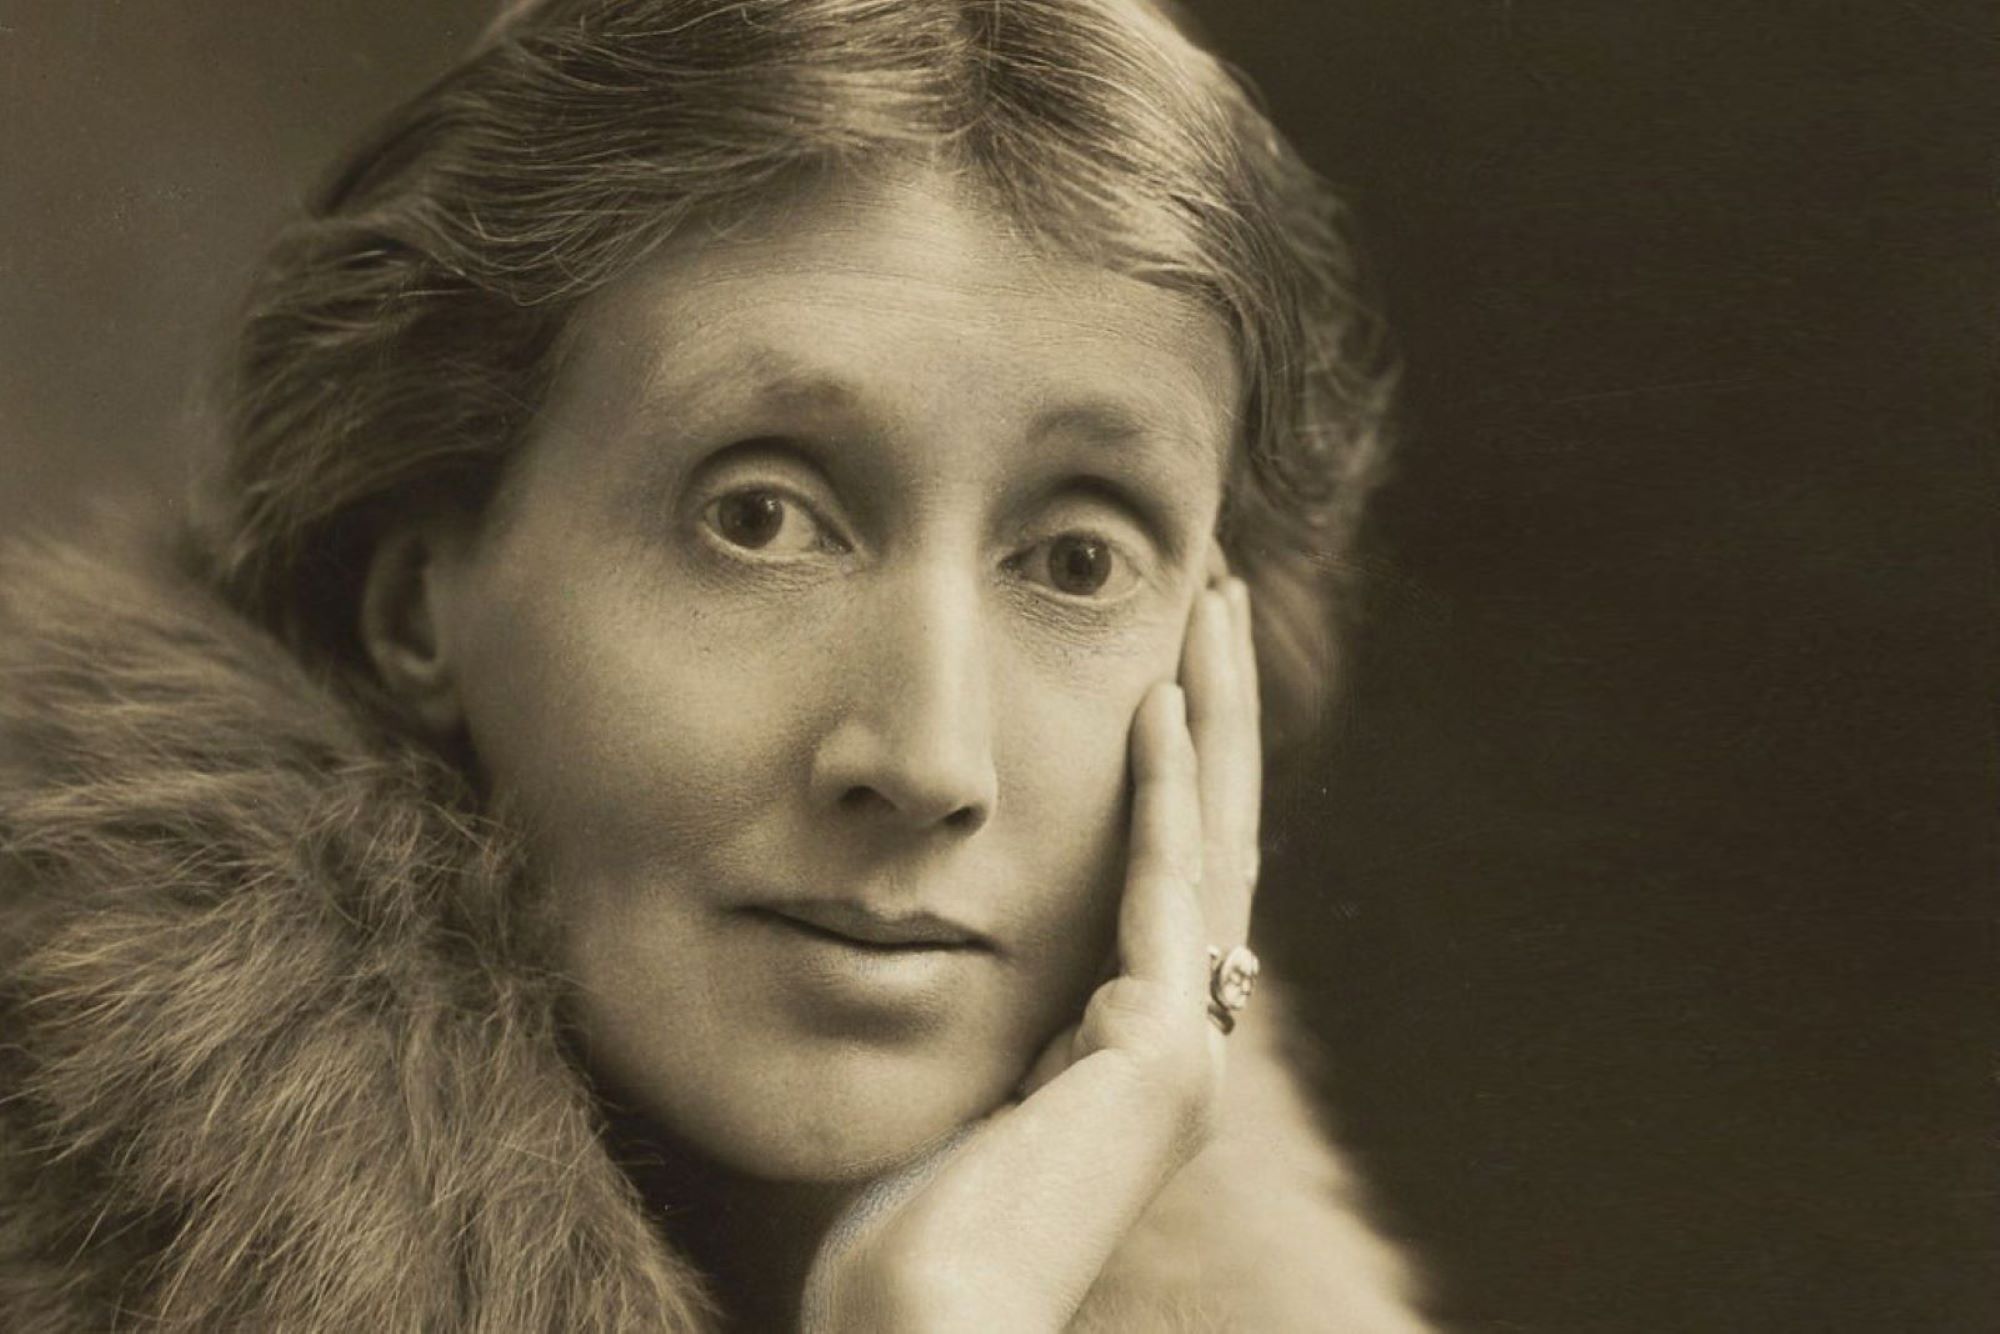 El 'Orlando' de Virginia Woolf llega a Teatros del Canal con una atrevida puesta en escena